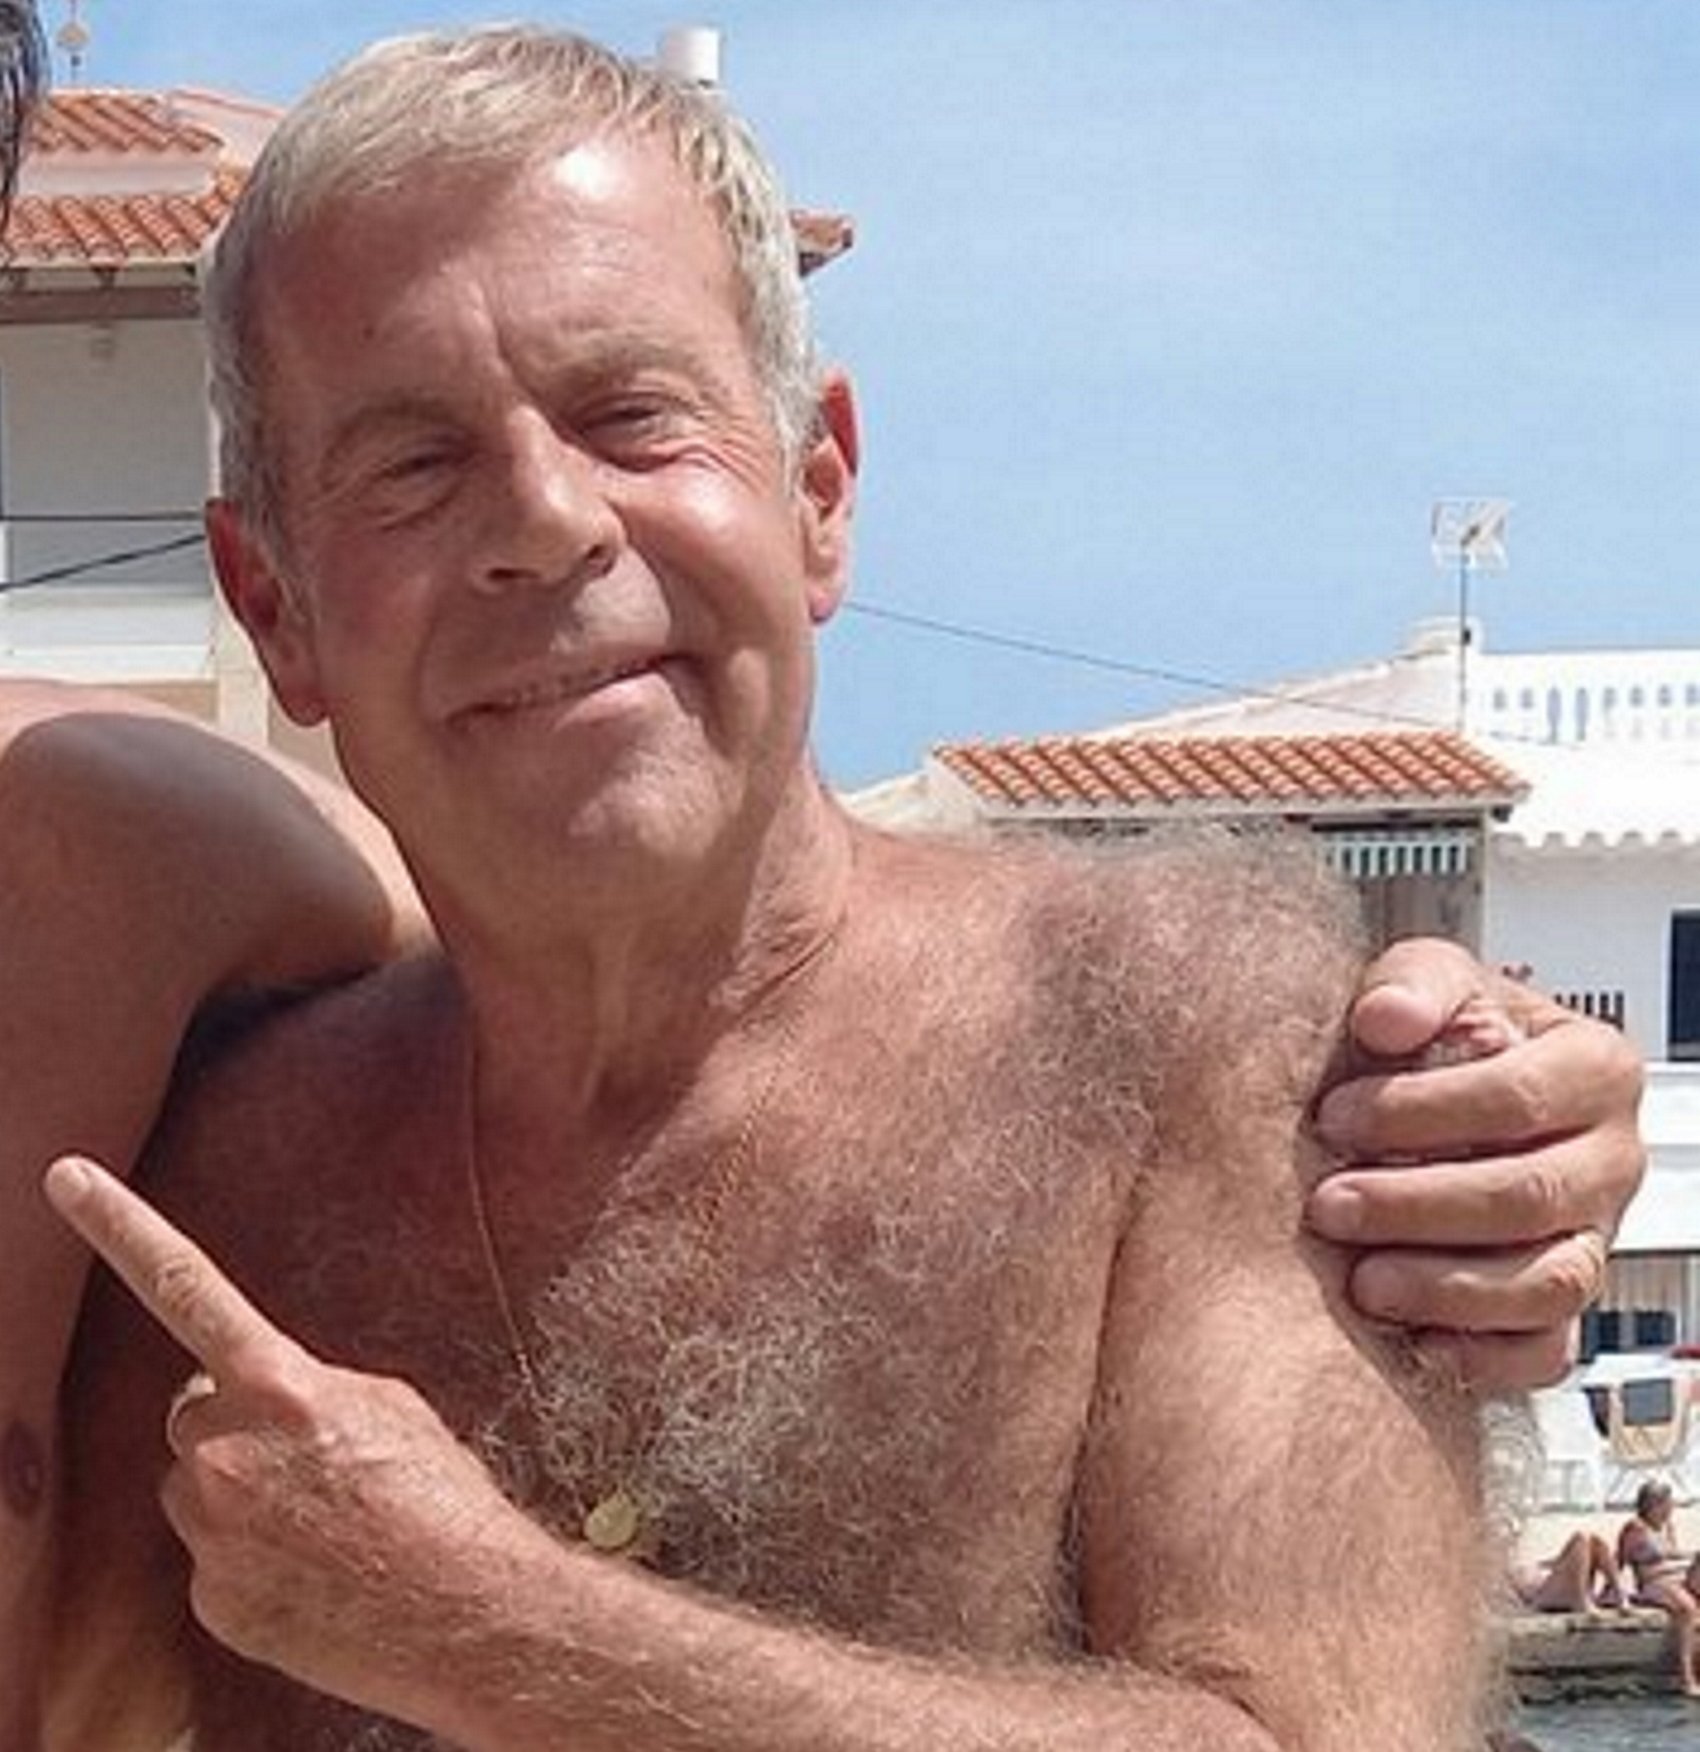 Tomás Guasch a la platja abraçat a famós exjugador del Barça: “gente normal"